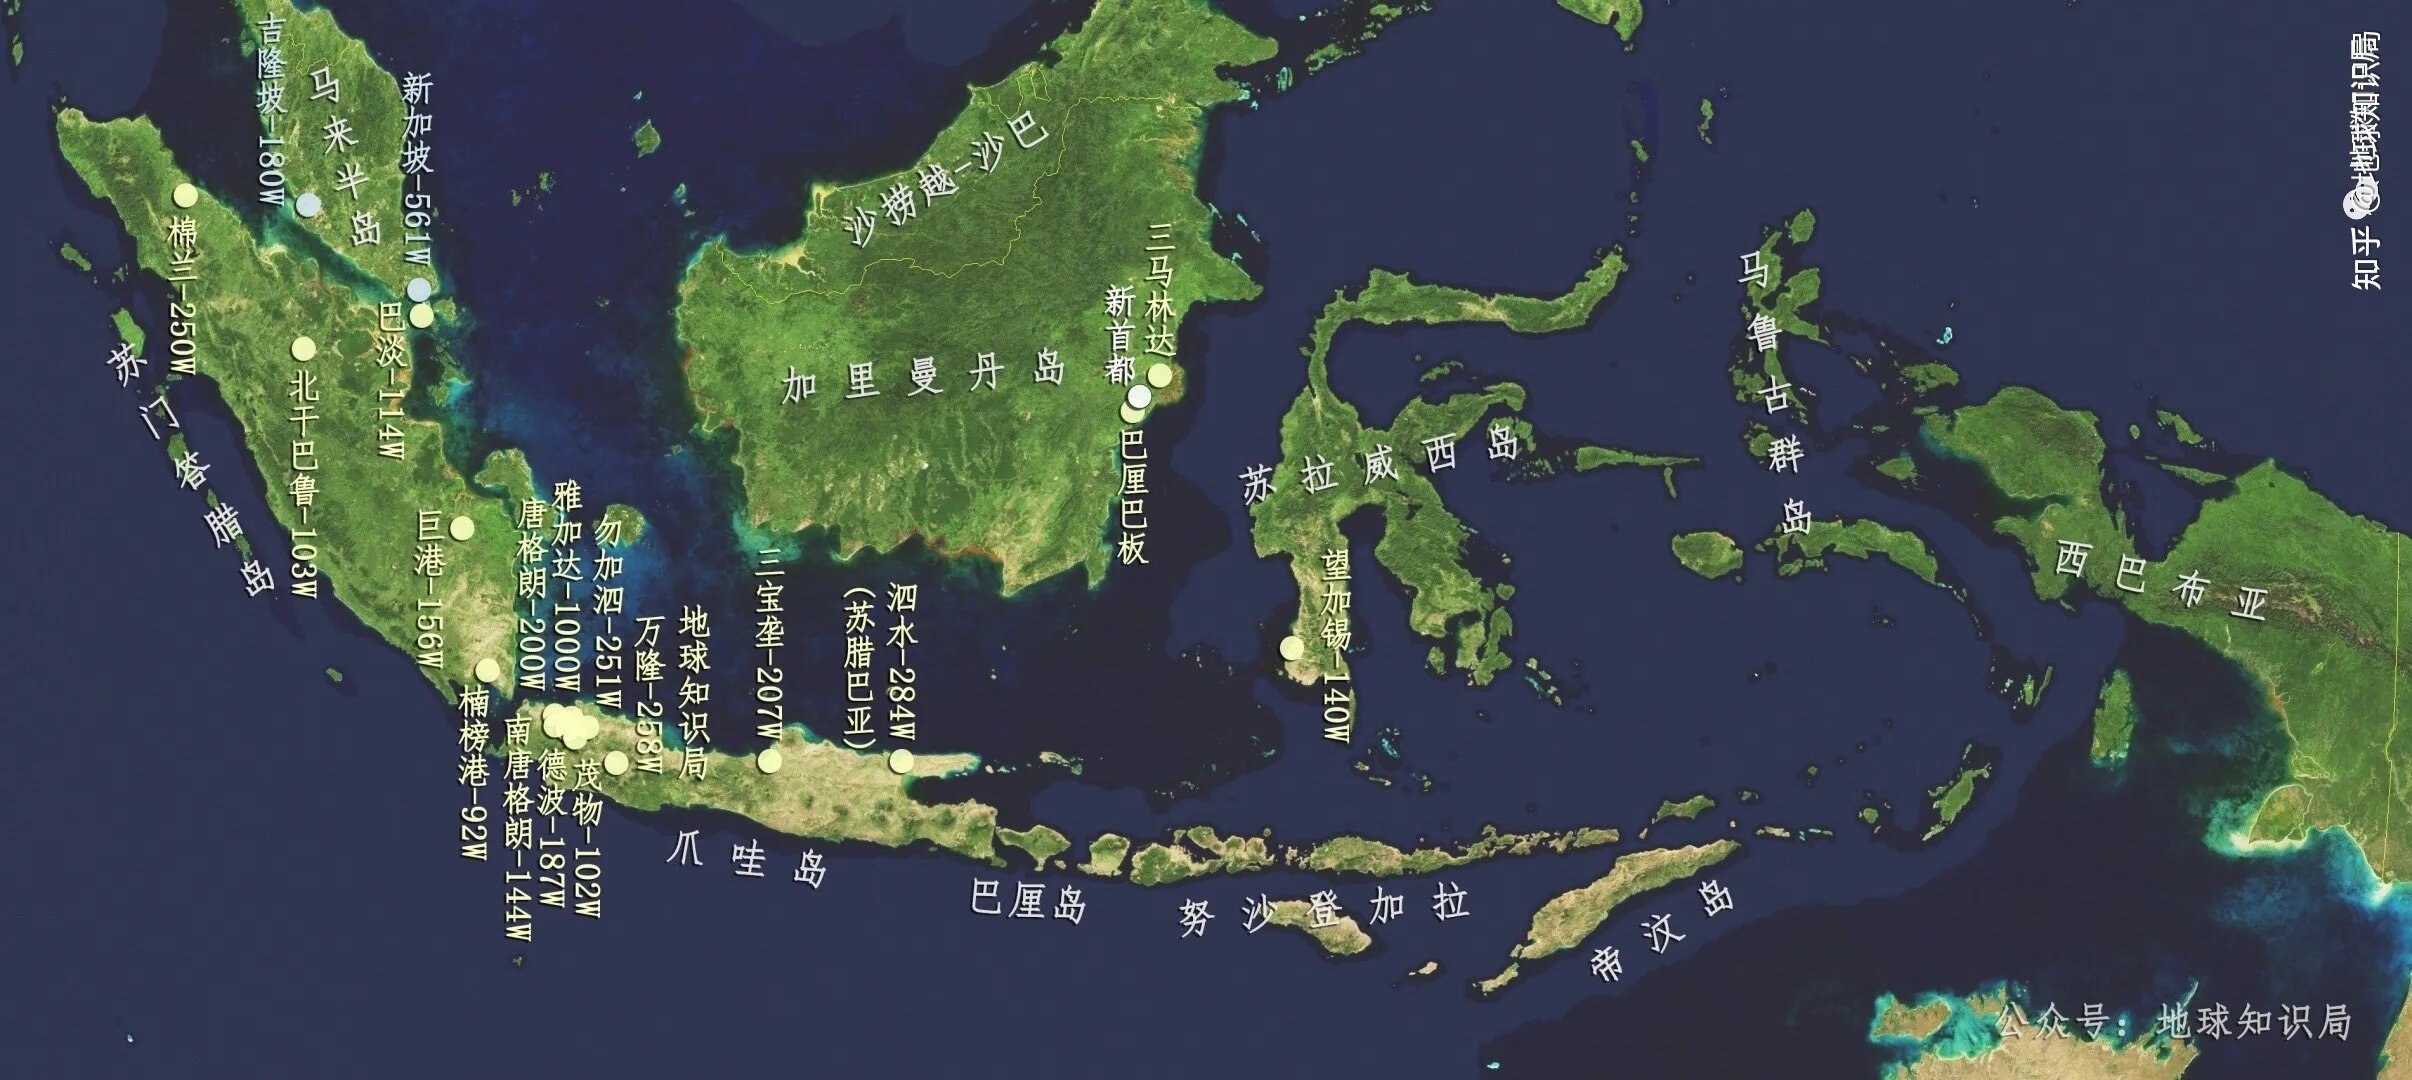 印度尼西亚主要城市图.jpg